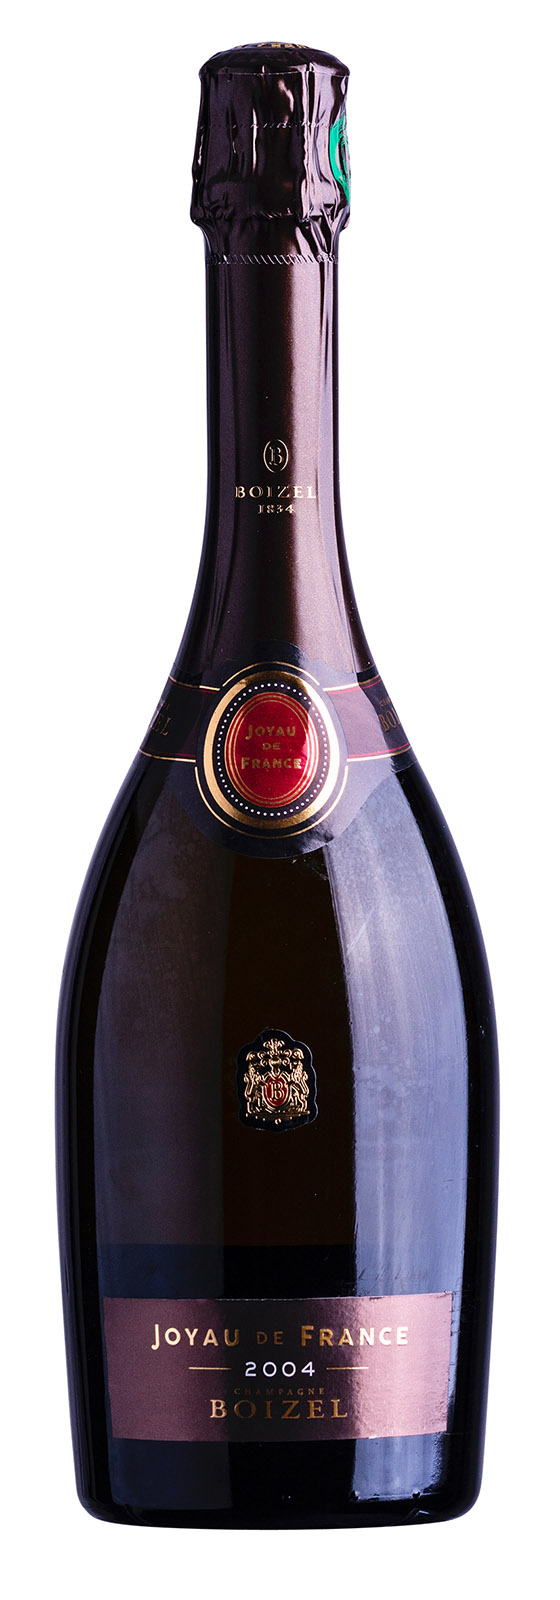 Champagne AOC Joyau de France Brut 2004